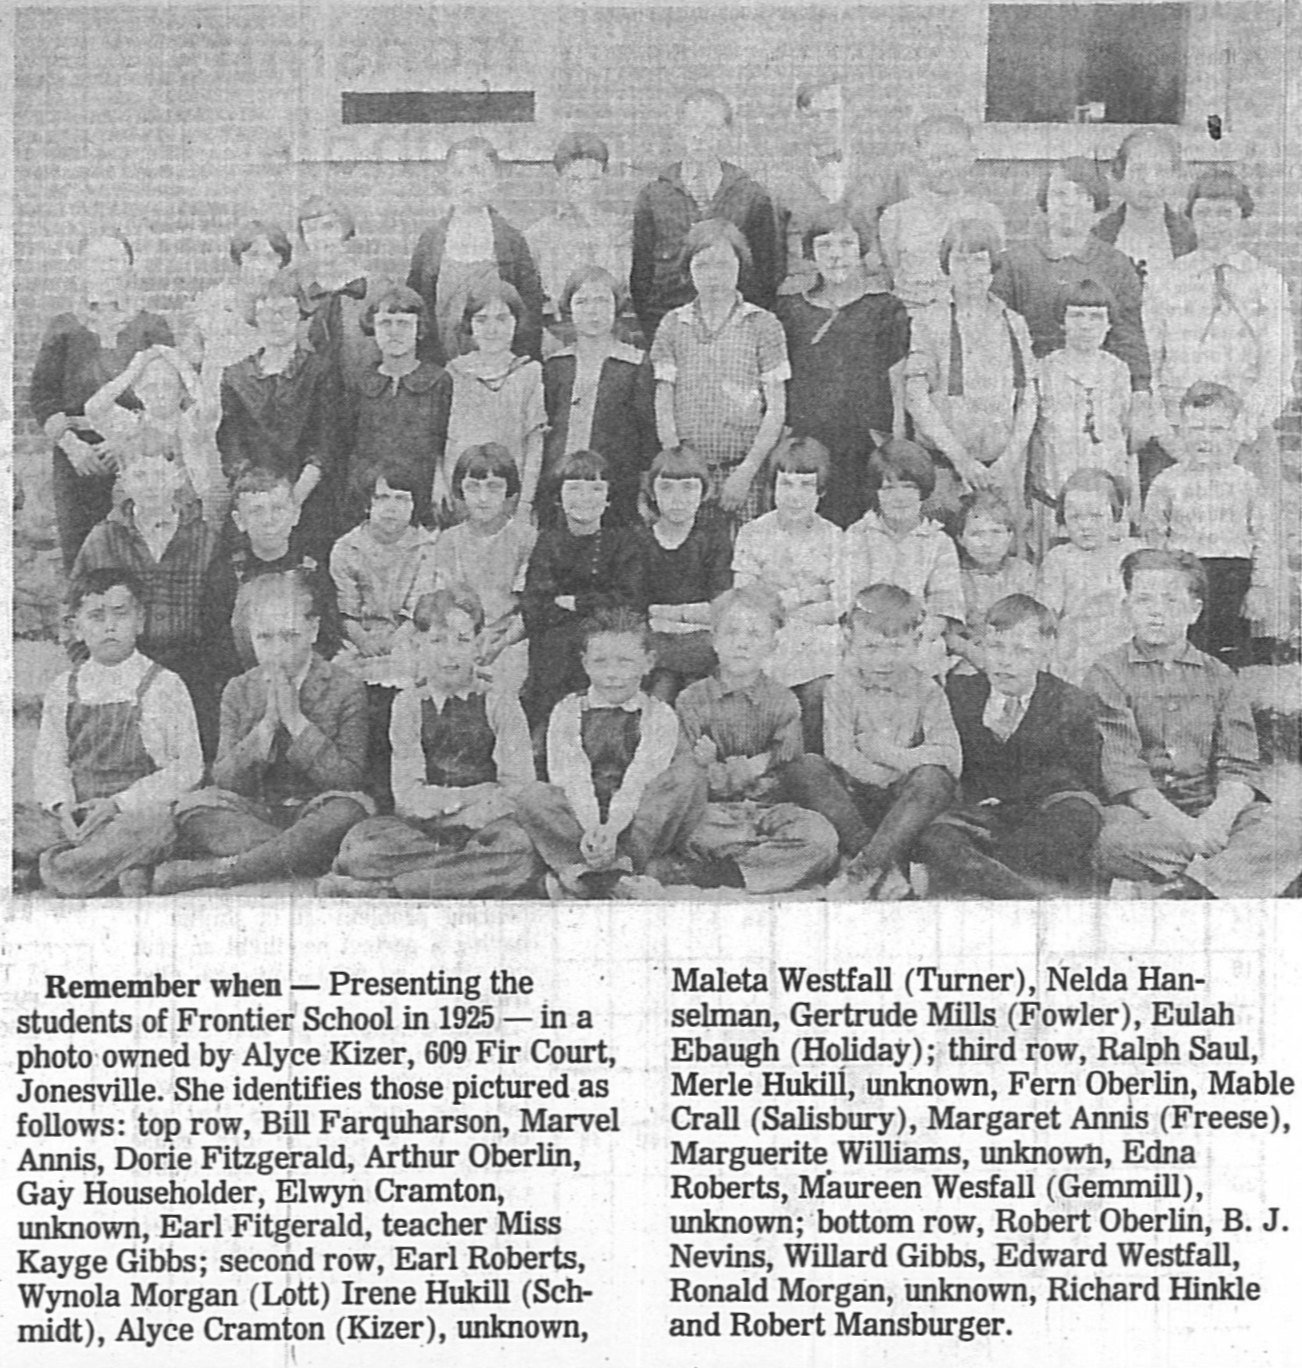  Frontier School 1925 